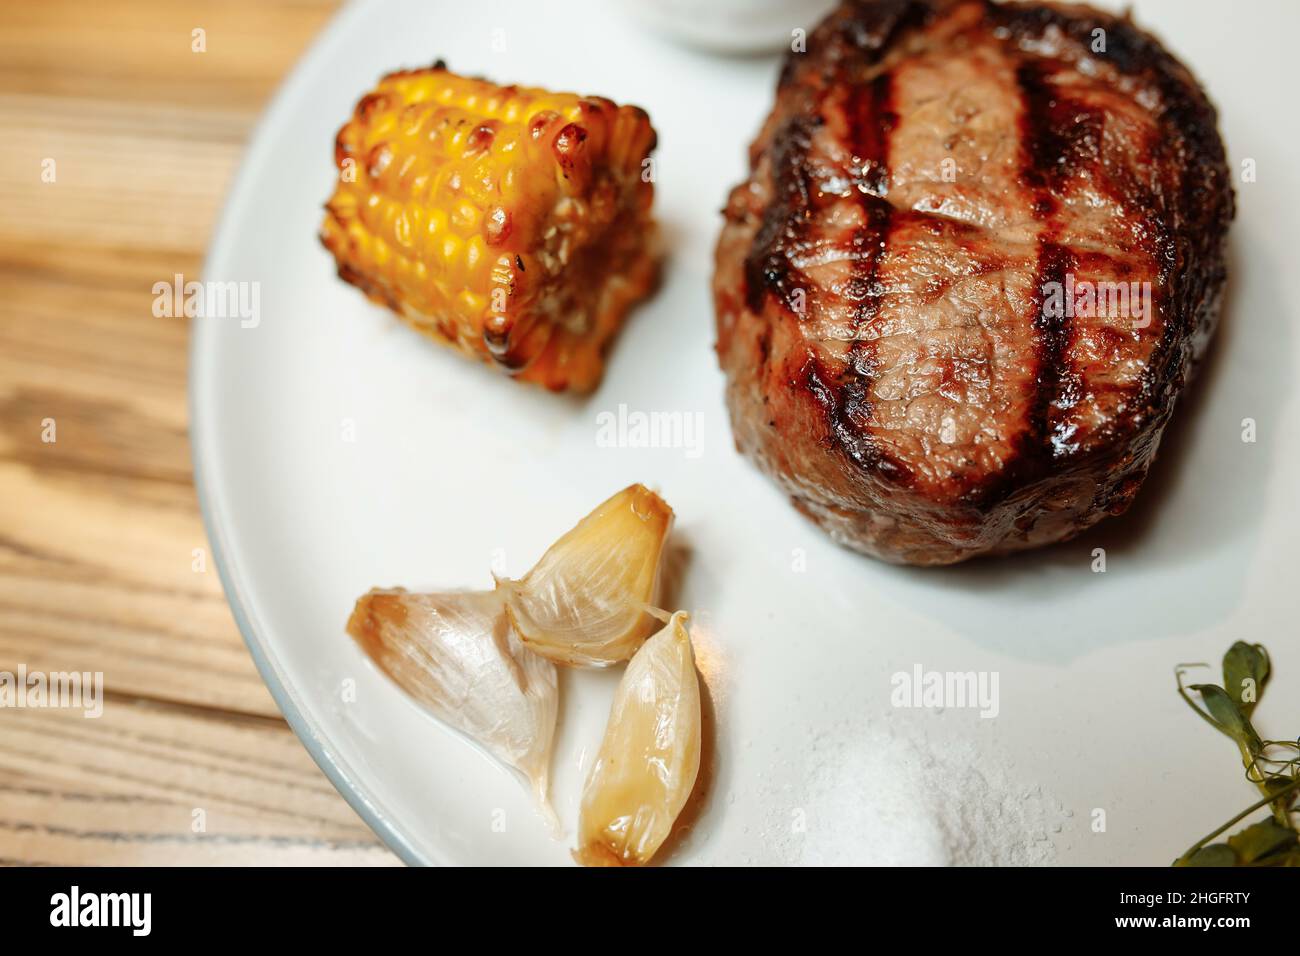 Gegrilltes Rib-Eye-Steak vom Grill, gebratenes Rib-Eye-Rindfleisch auf einem Teller mit grünem Salat. Dunkler Hintergrund Stockfoto